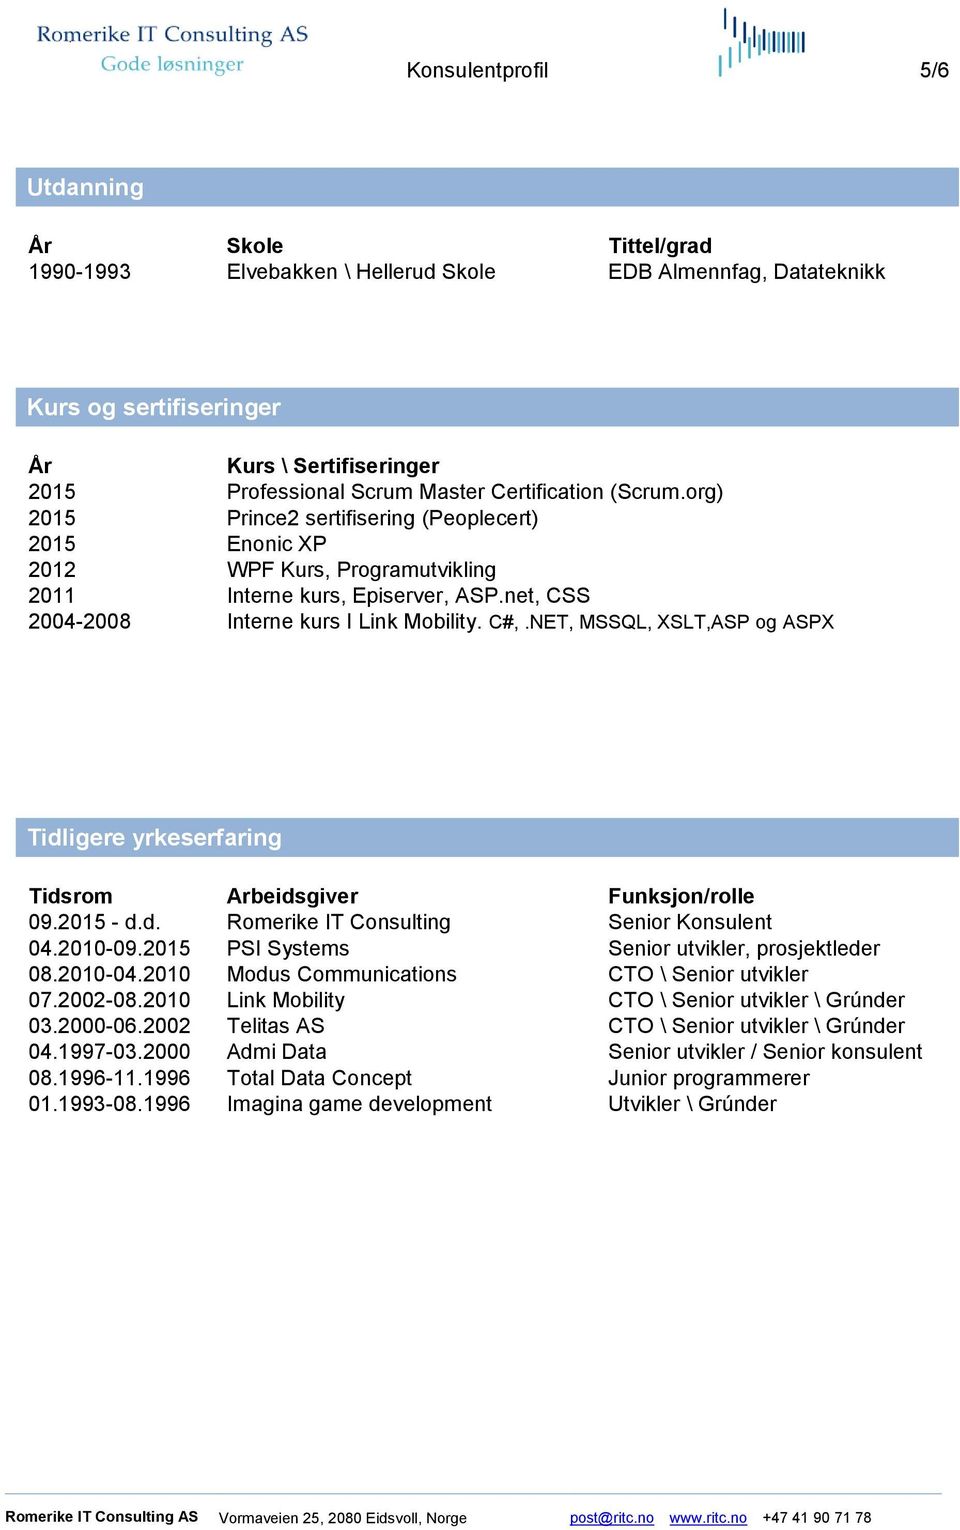 NET, MSSQL, XSLT,ASP og ASPX Tidligere yrkeserfaring Tidsrom Arbeidsgiver Funksjon/rolle 09.2015 - d.d. Romerike IT Consulting Senior Konsulent 04.2010-09.